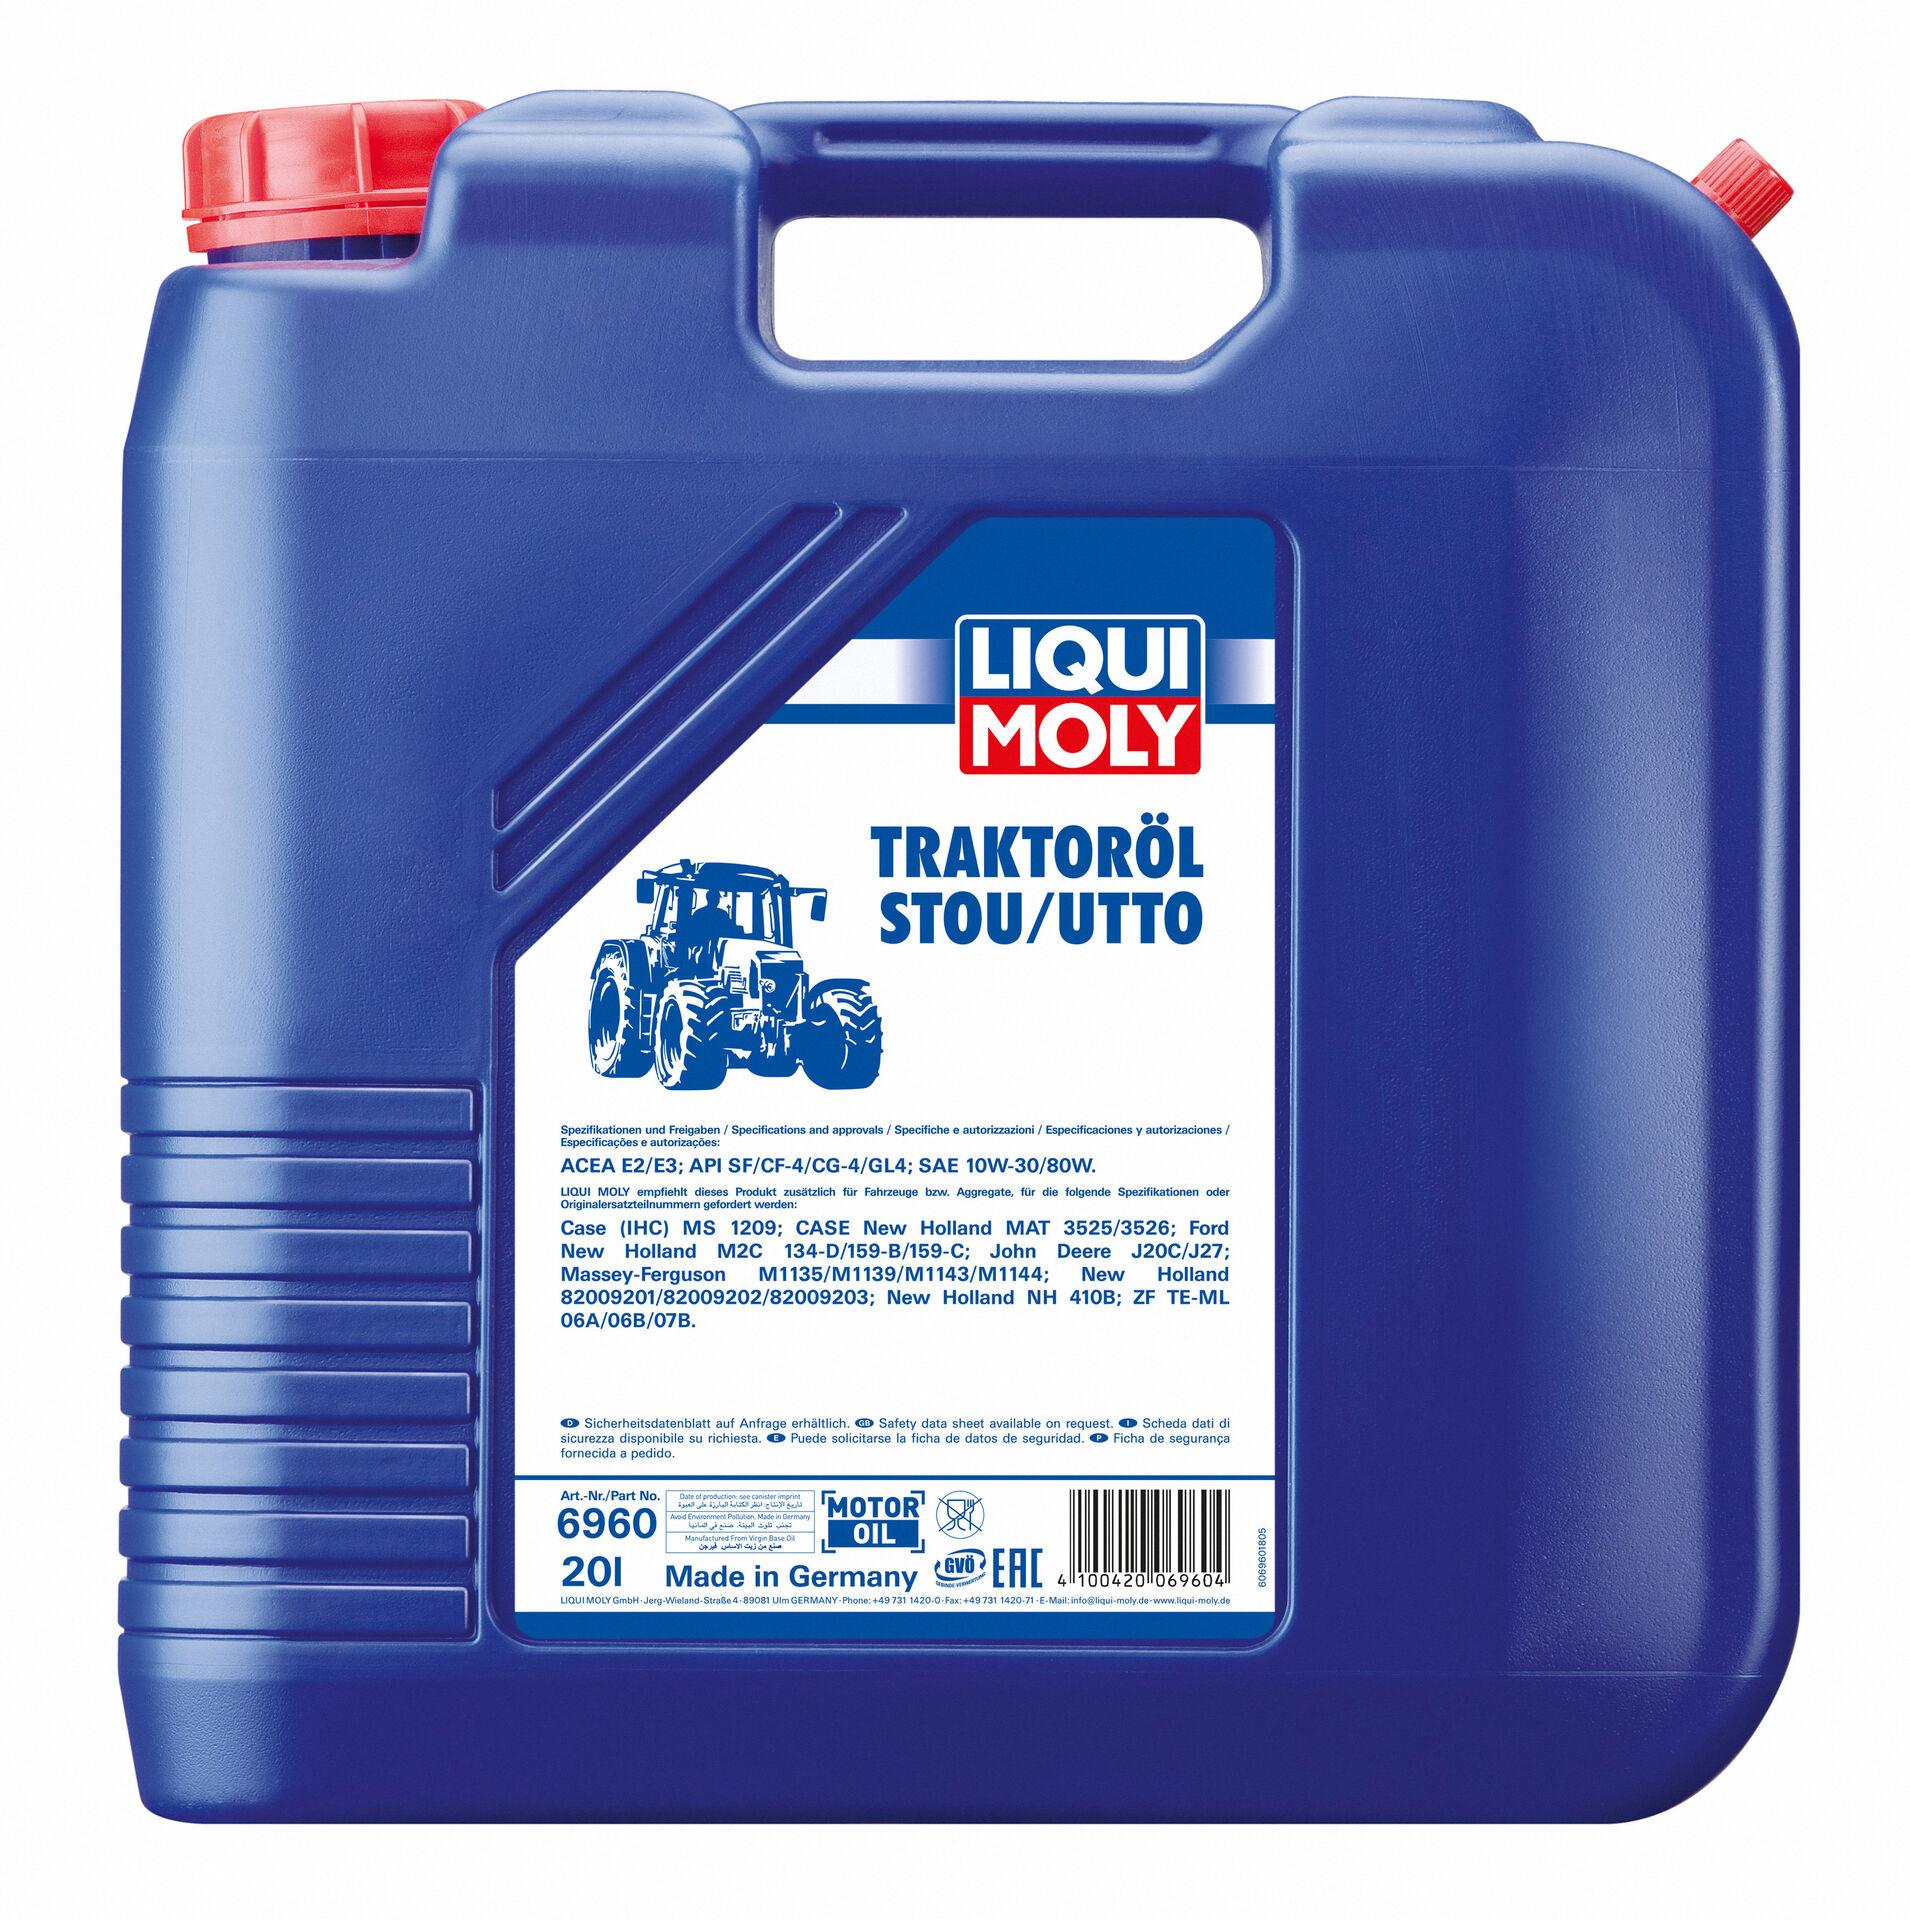 Liqui Moly Traktoröl STOU/UTTO, 20 Liter